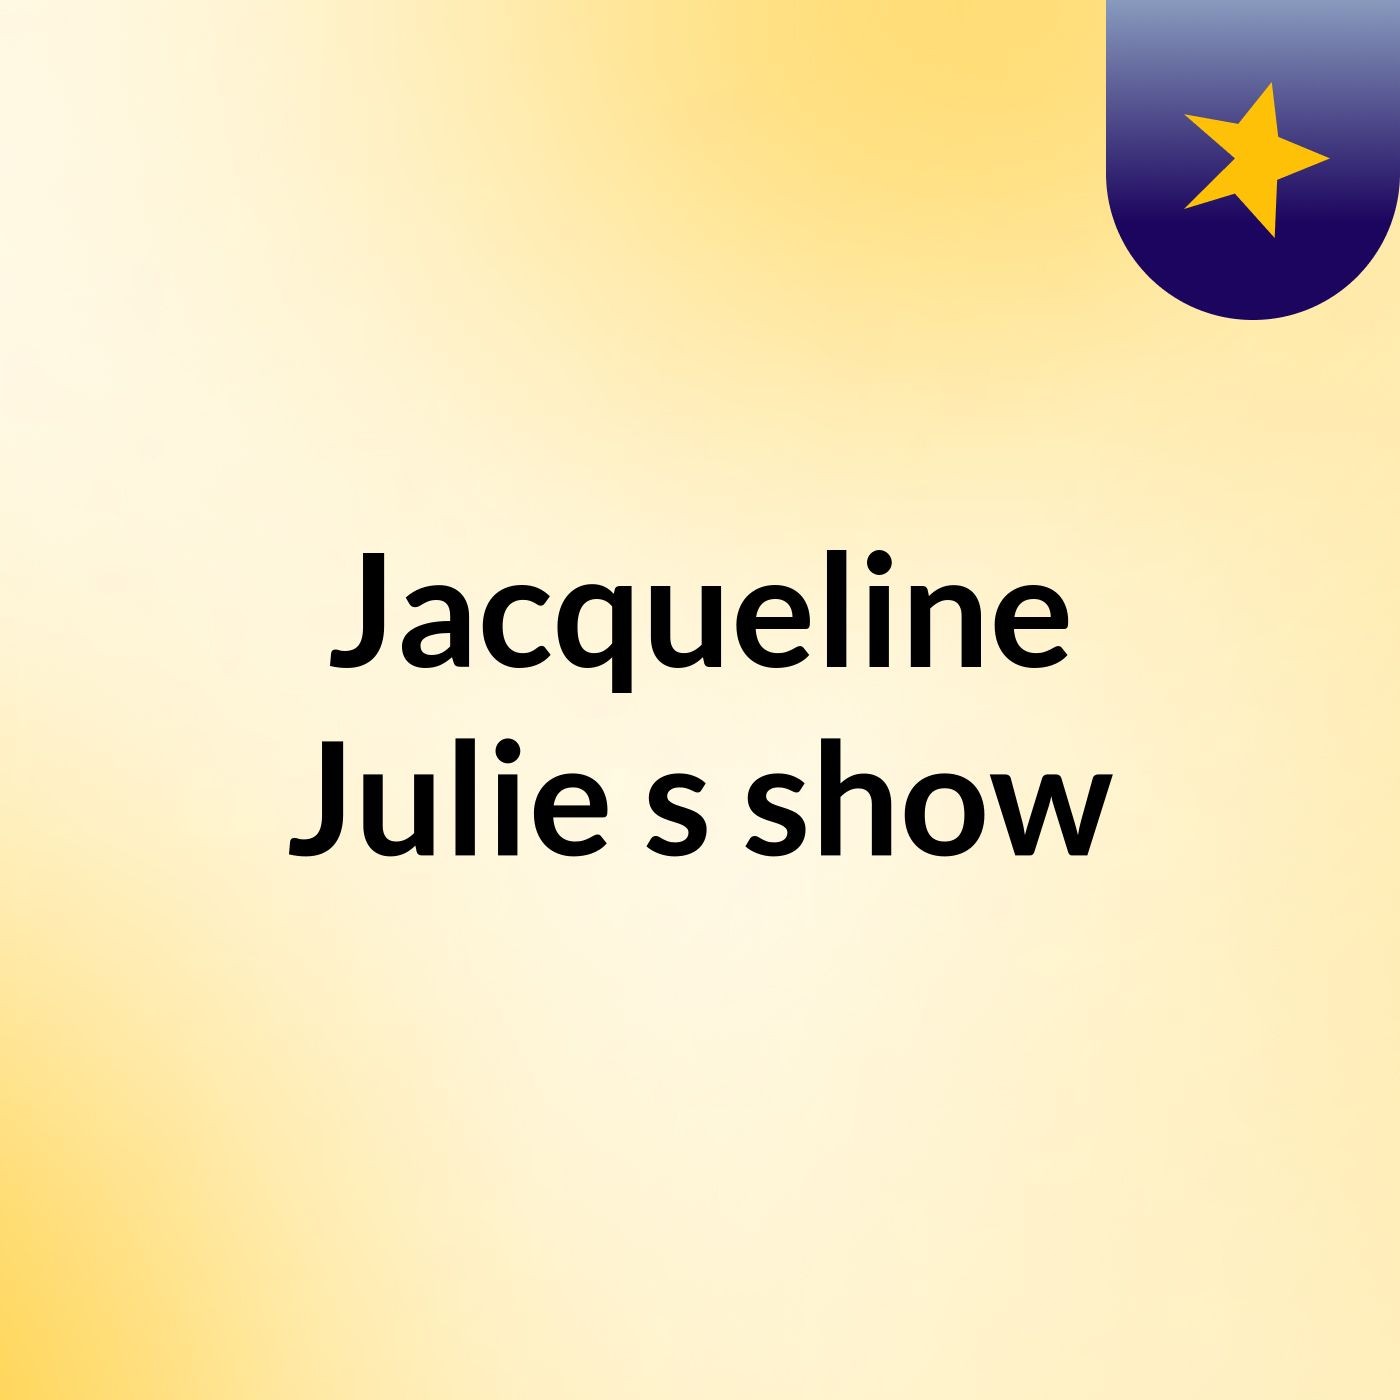 Jacqueline Julie's show